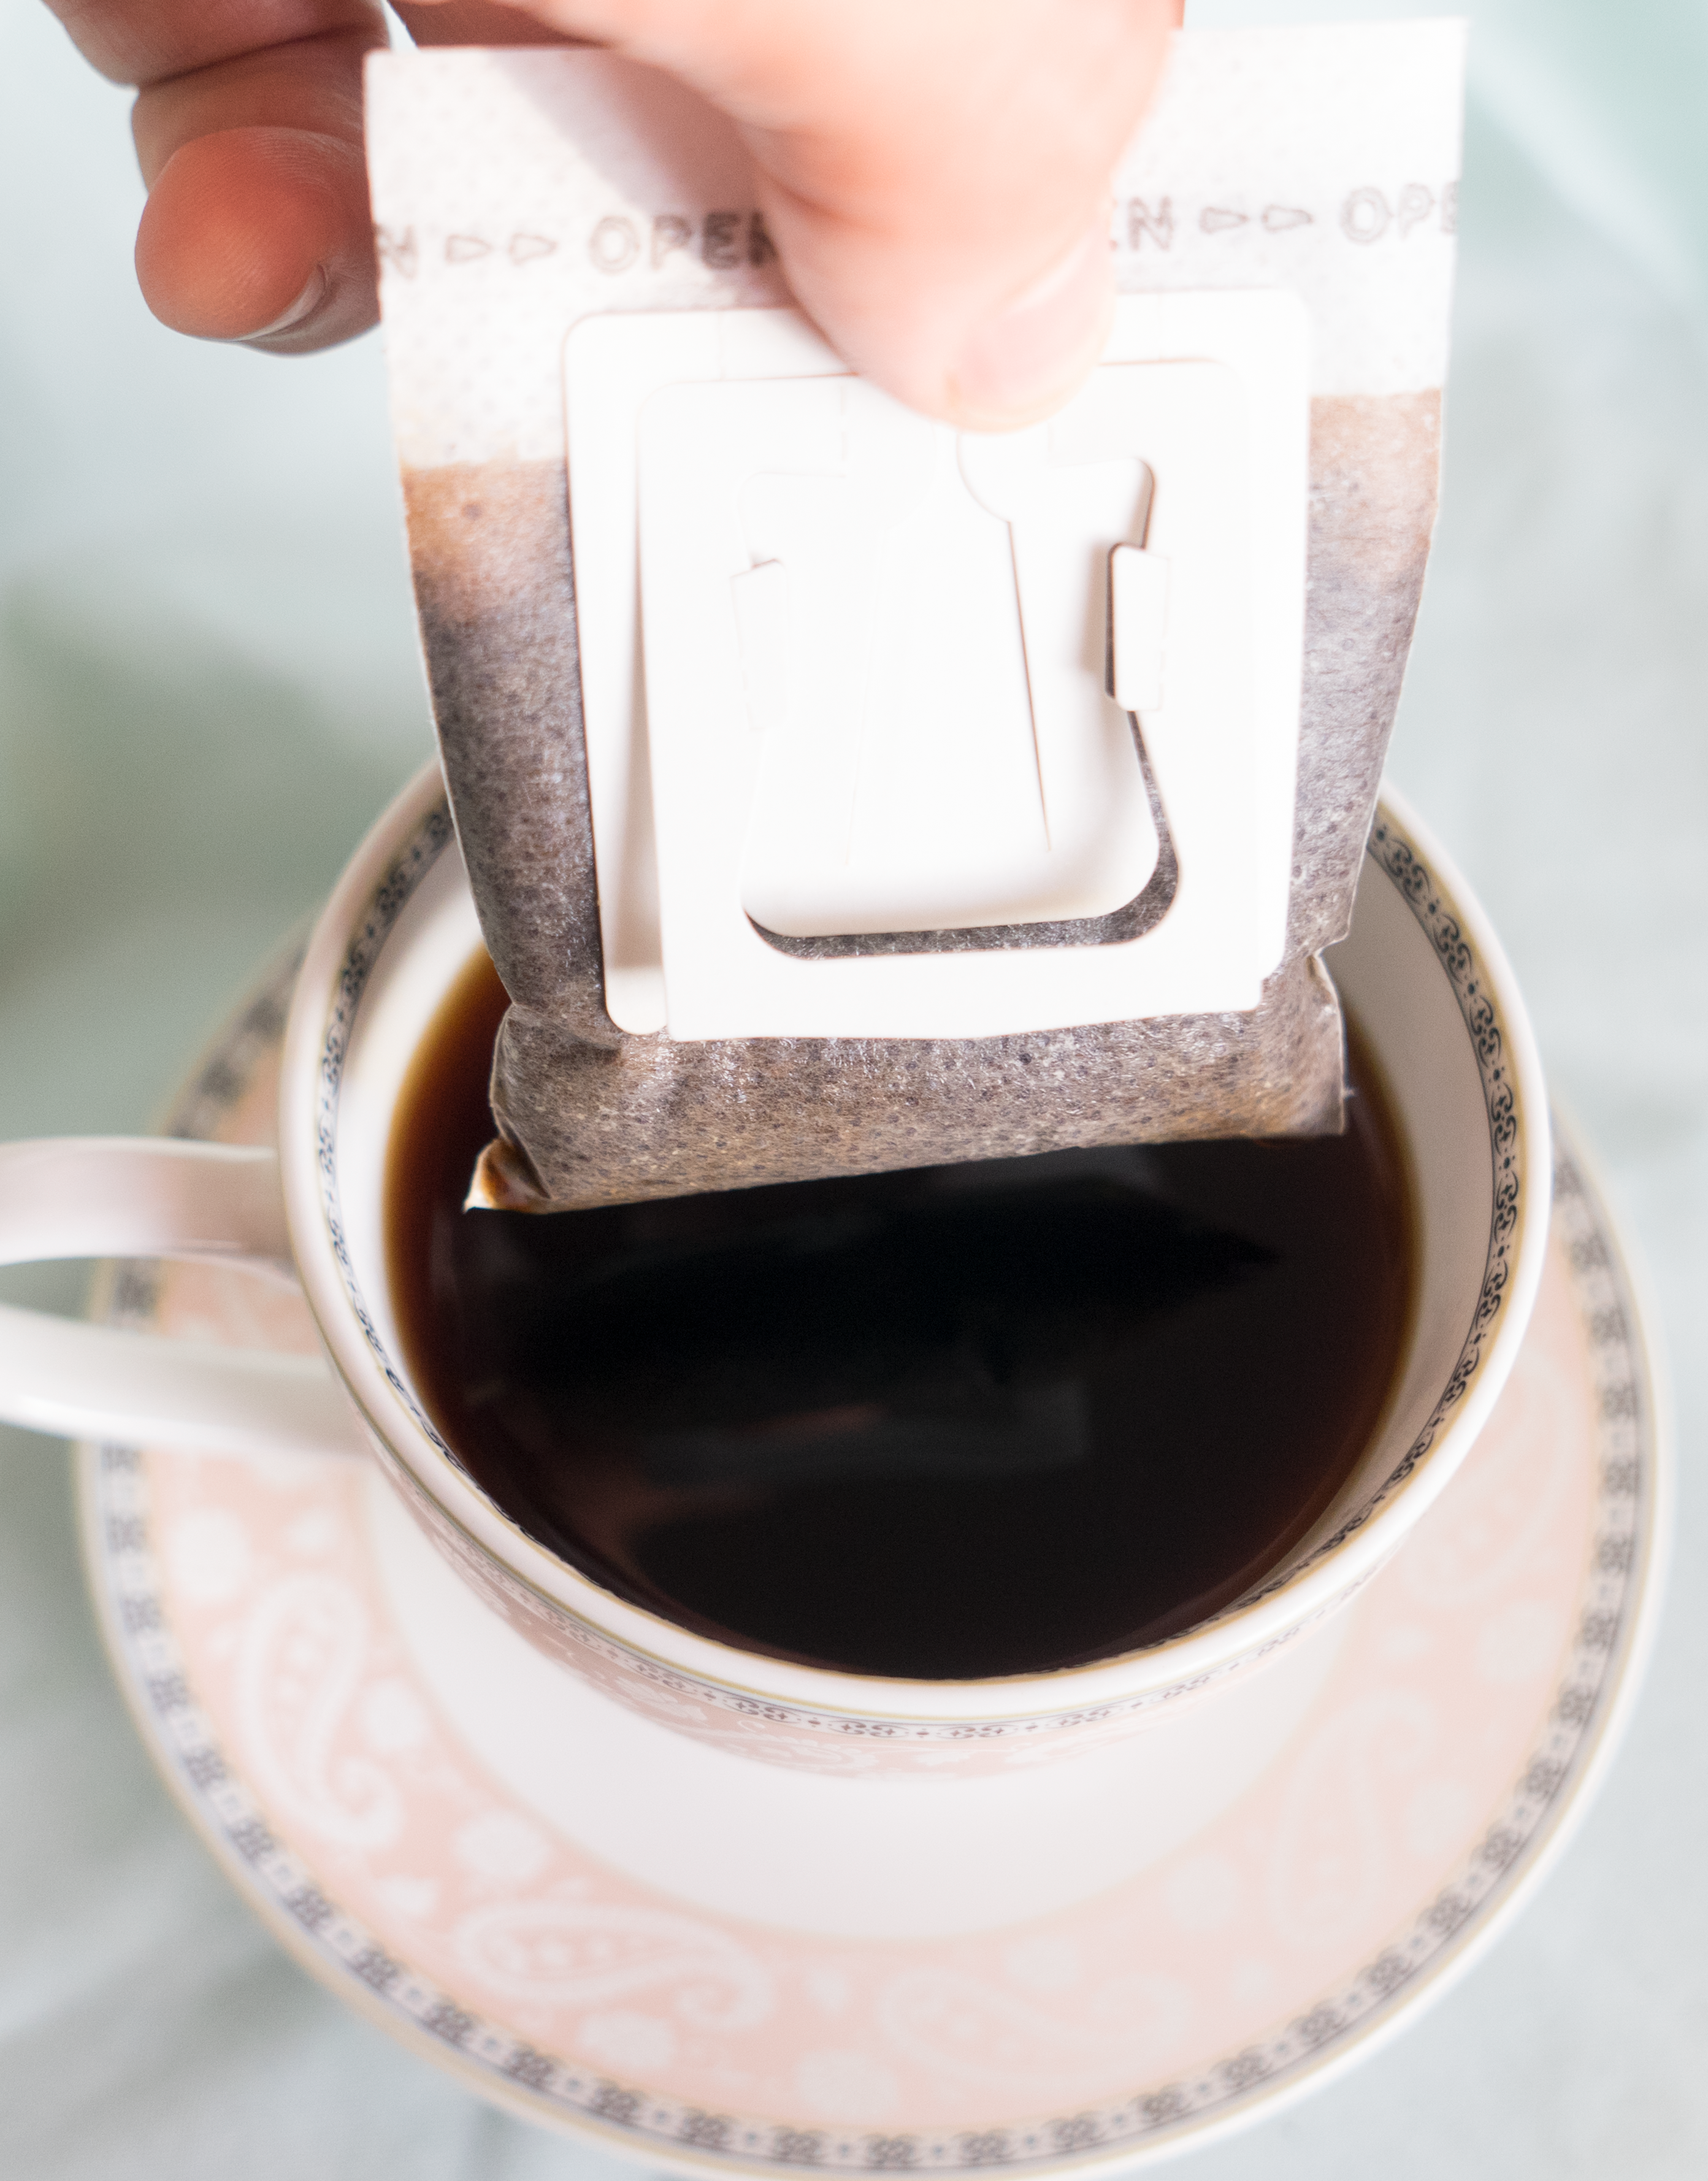 ☕лучшие фильтры для заваривания чая и кофе на 2022 год